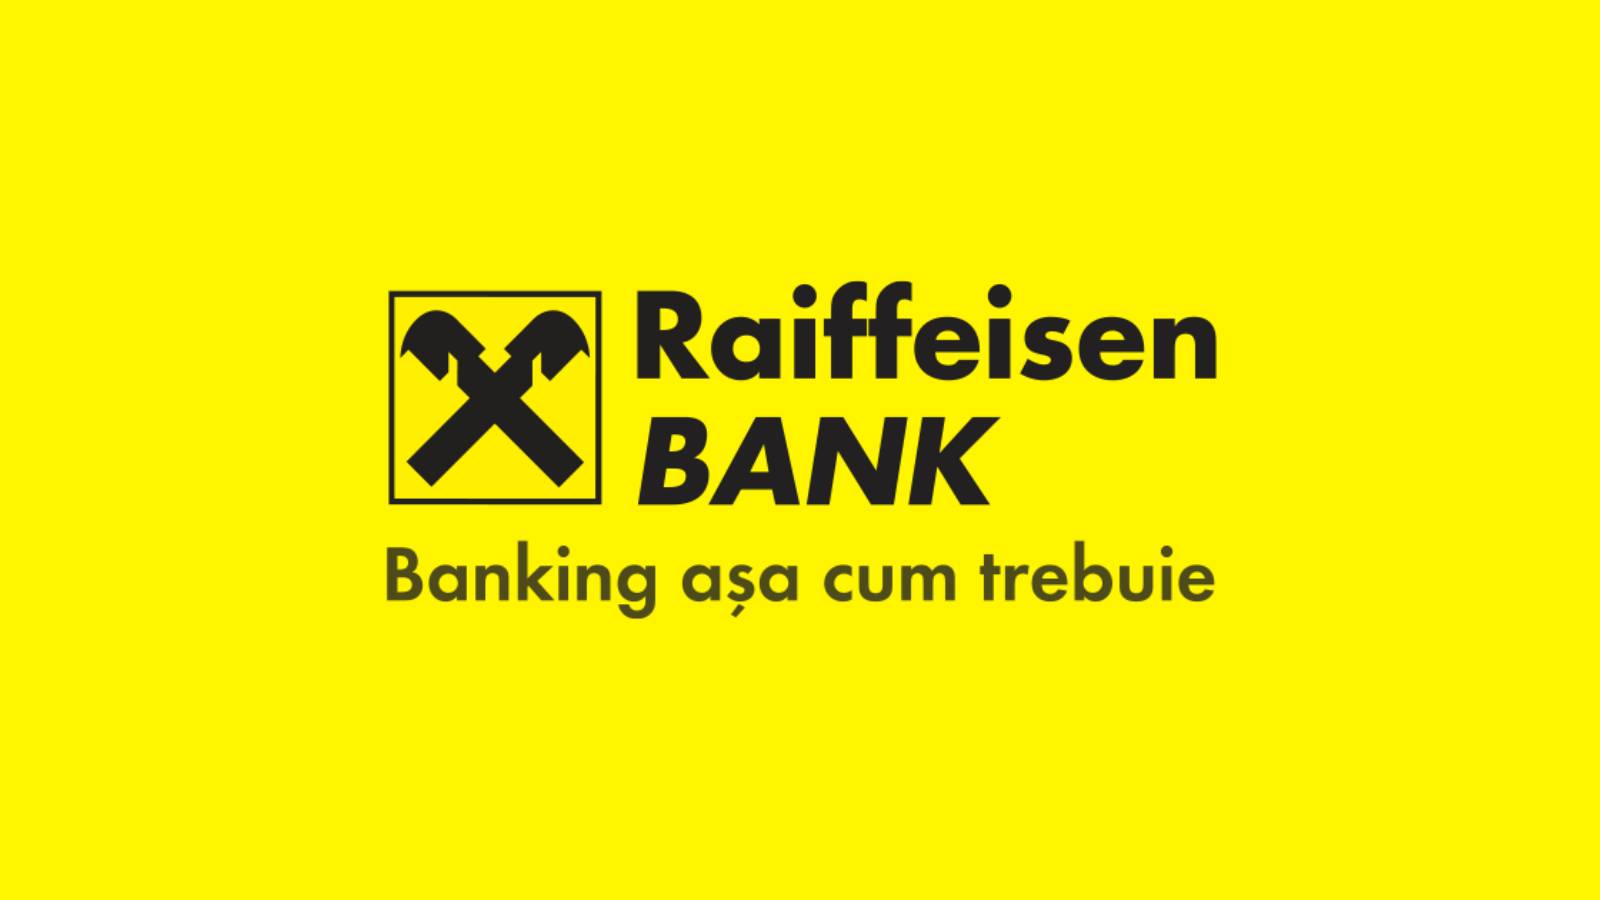 La décision officiellement annoncée par la Banque Raiffeisen affecte les clients